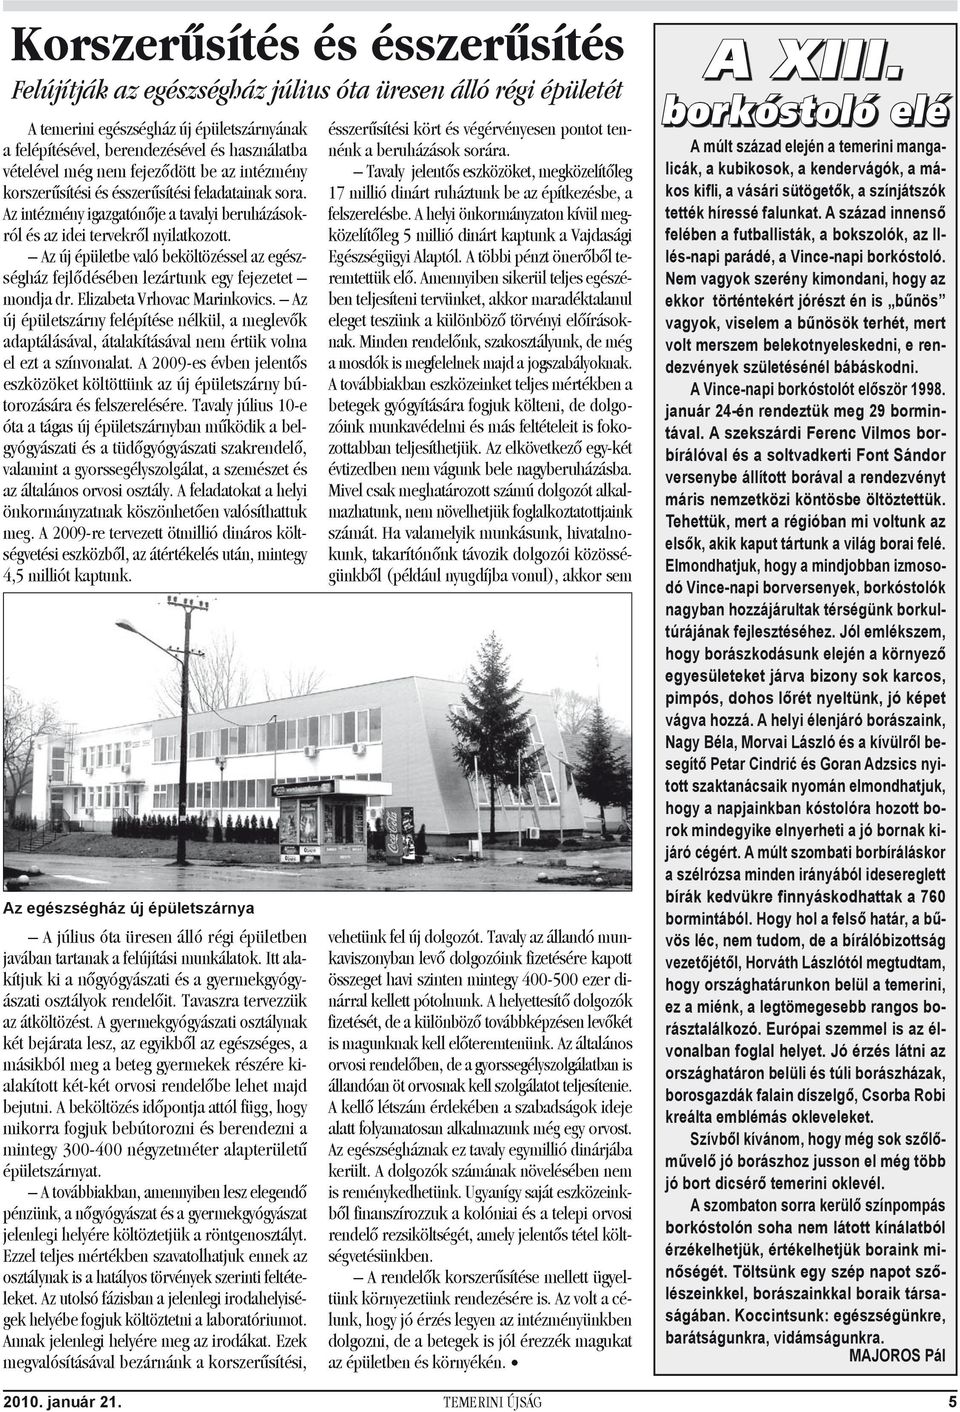 Az új épületbe való beköltözéssel az egészségház fejlődésében lezártunk egy fejezetet mondja dr. Elizabeta Vrhovac Marinkovics.